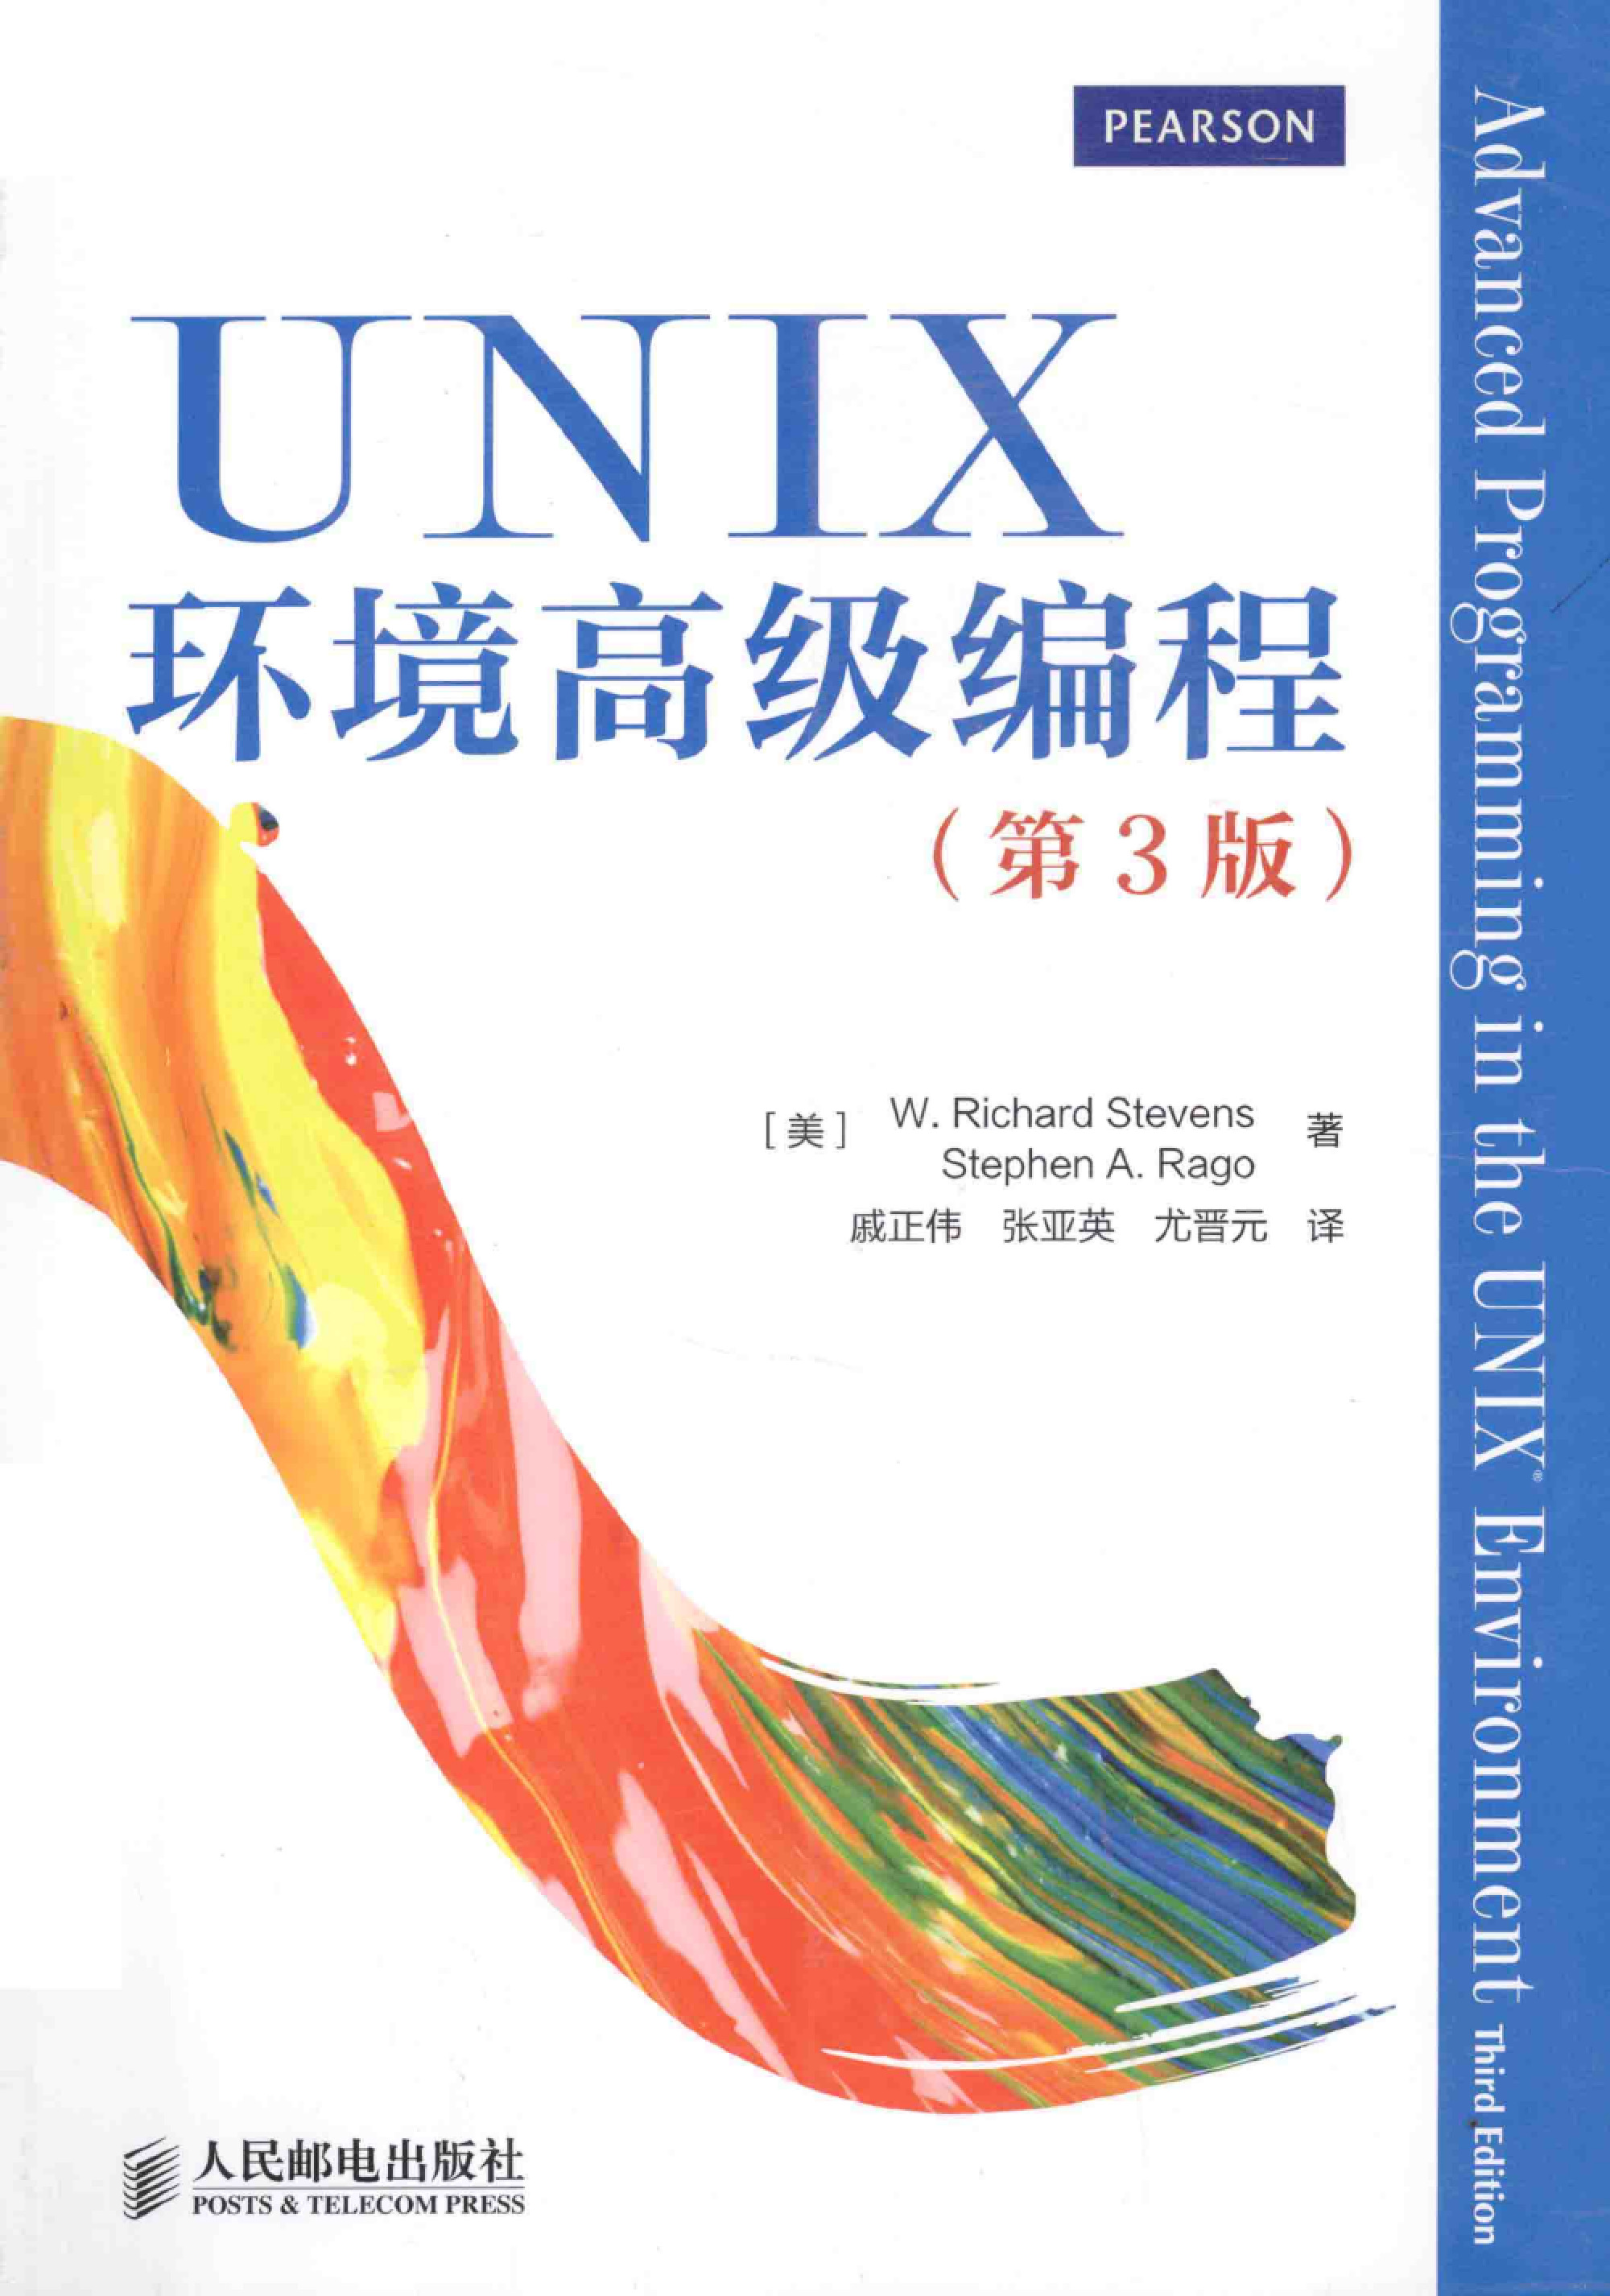 UNIX环境高级编程-中文-目录-扫描版-第3版(1)